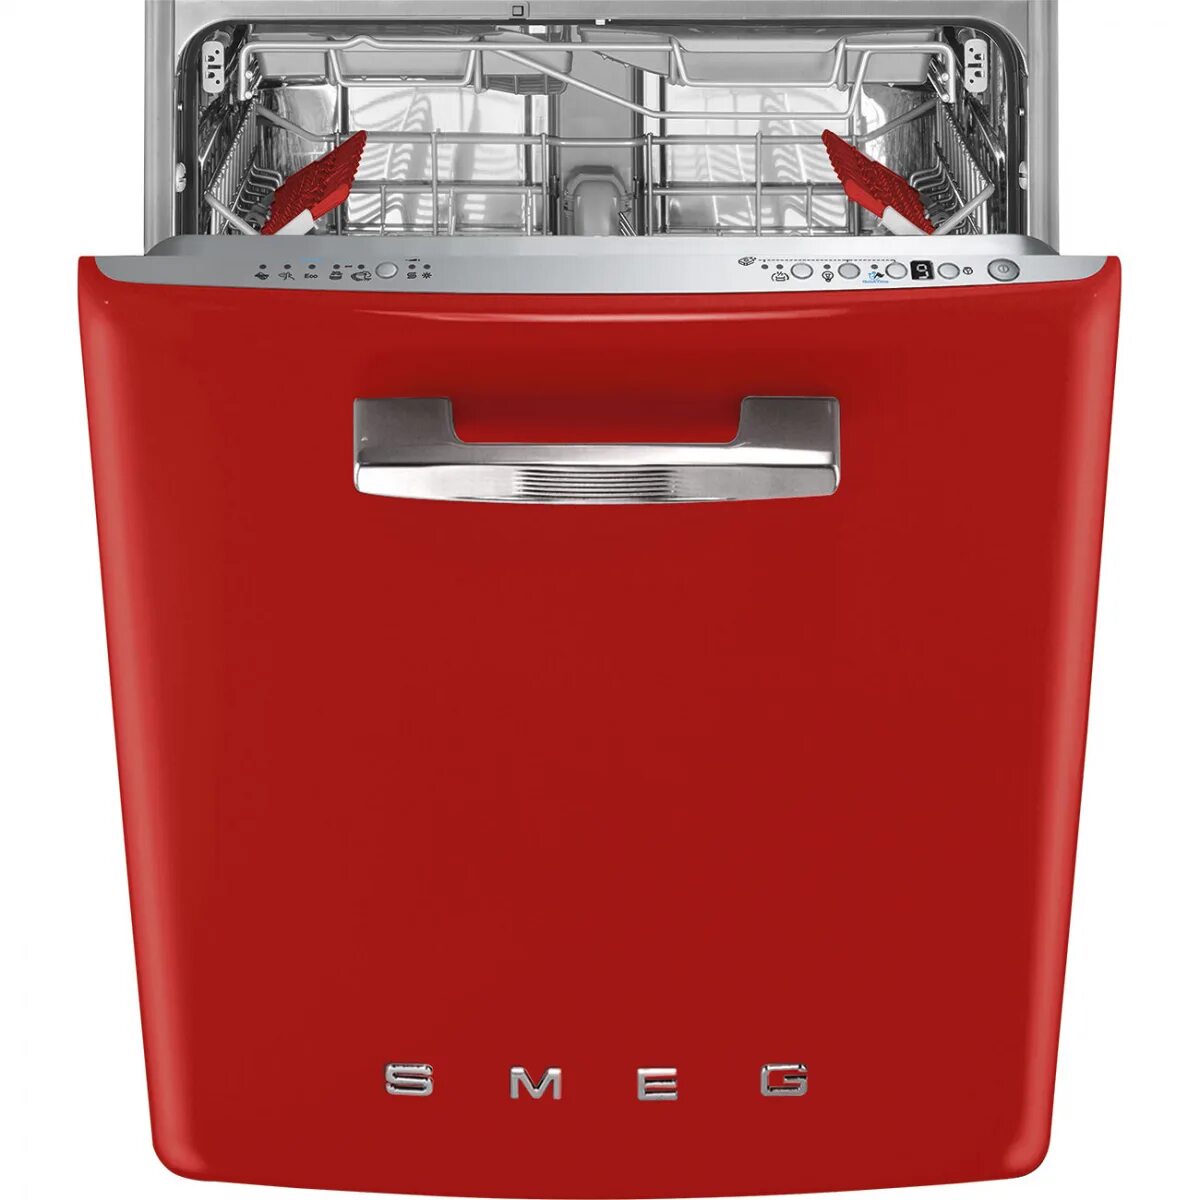 Посудомоечная машина Smeg st2fabr2. Посудомоечная машина Smeg st2fabcr. Смег посудомоечная машина встраиваемая. Посудомоечная машина Смег 45 см встраиваемая. Посудомоечные машины 3 комплекта